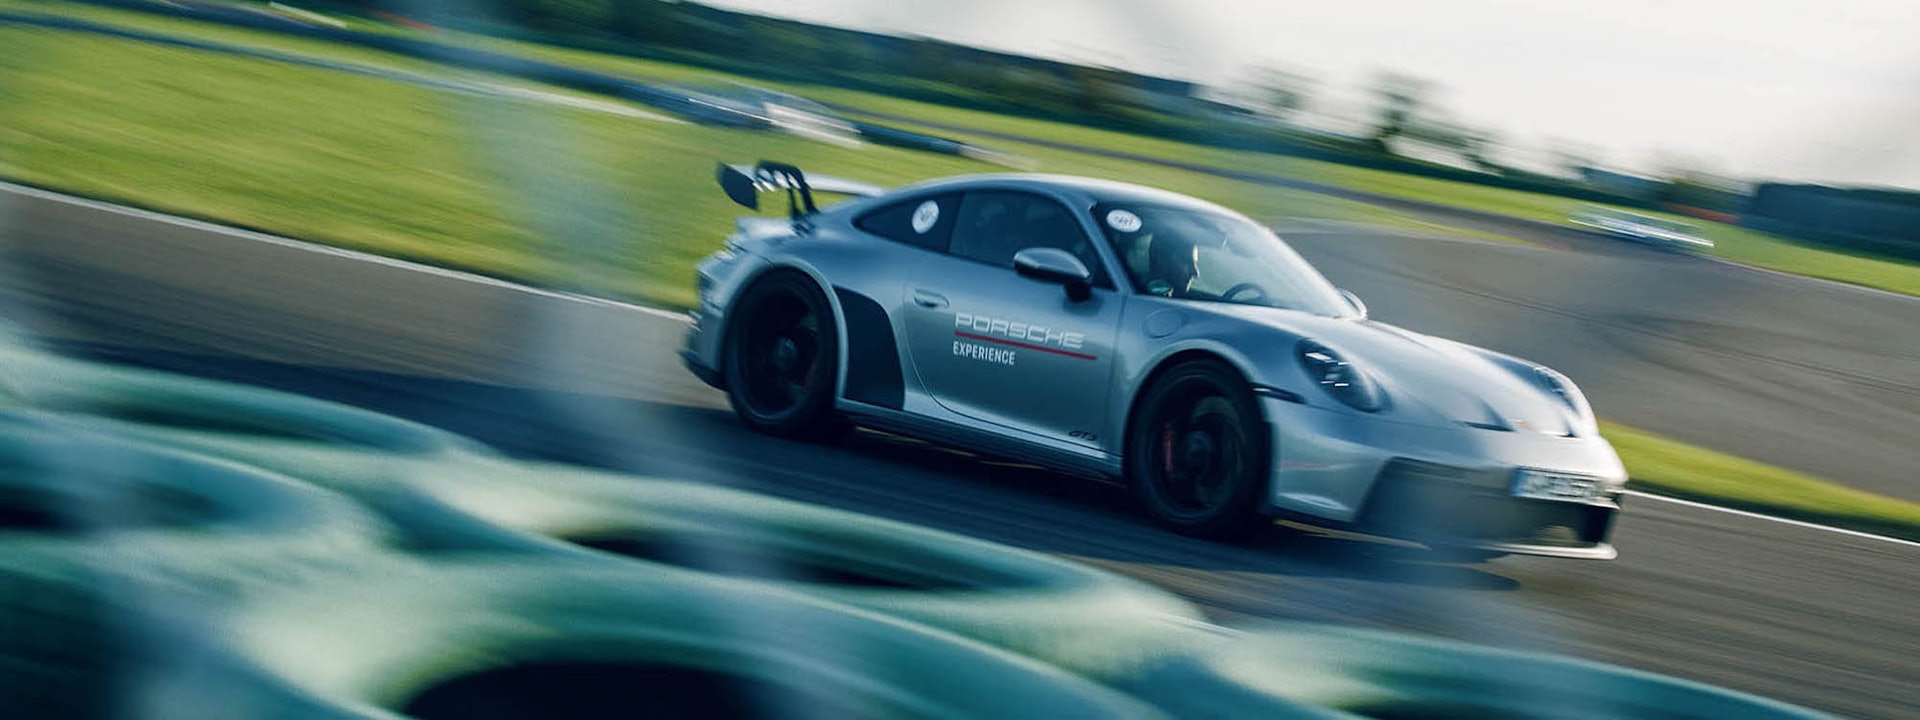 Lamley Daily: Majorette Porsche 911 Carrera S “Porsche Experience